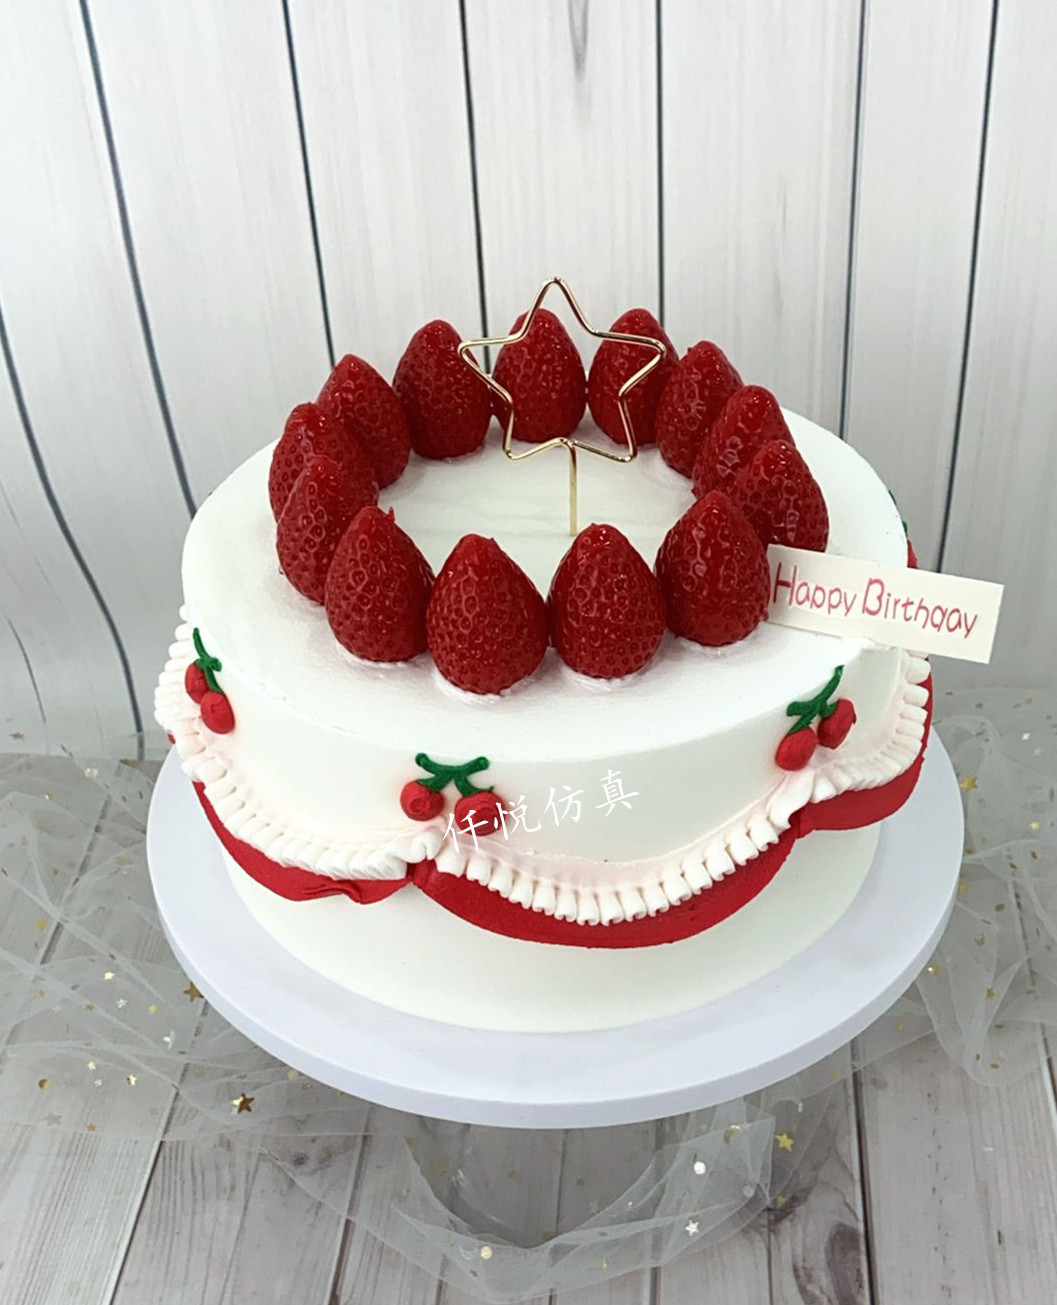 仿真蛋糕模型新款网红创意简约欧派水果卡通奶油生日样品展示